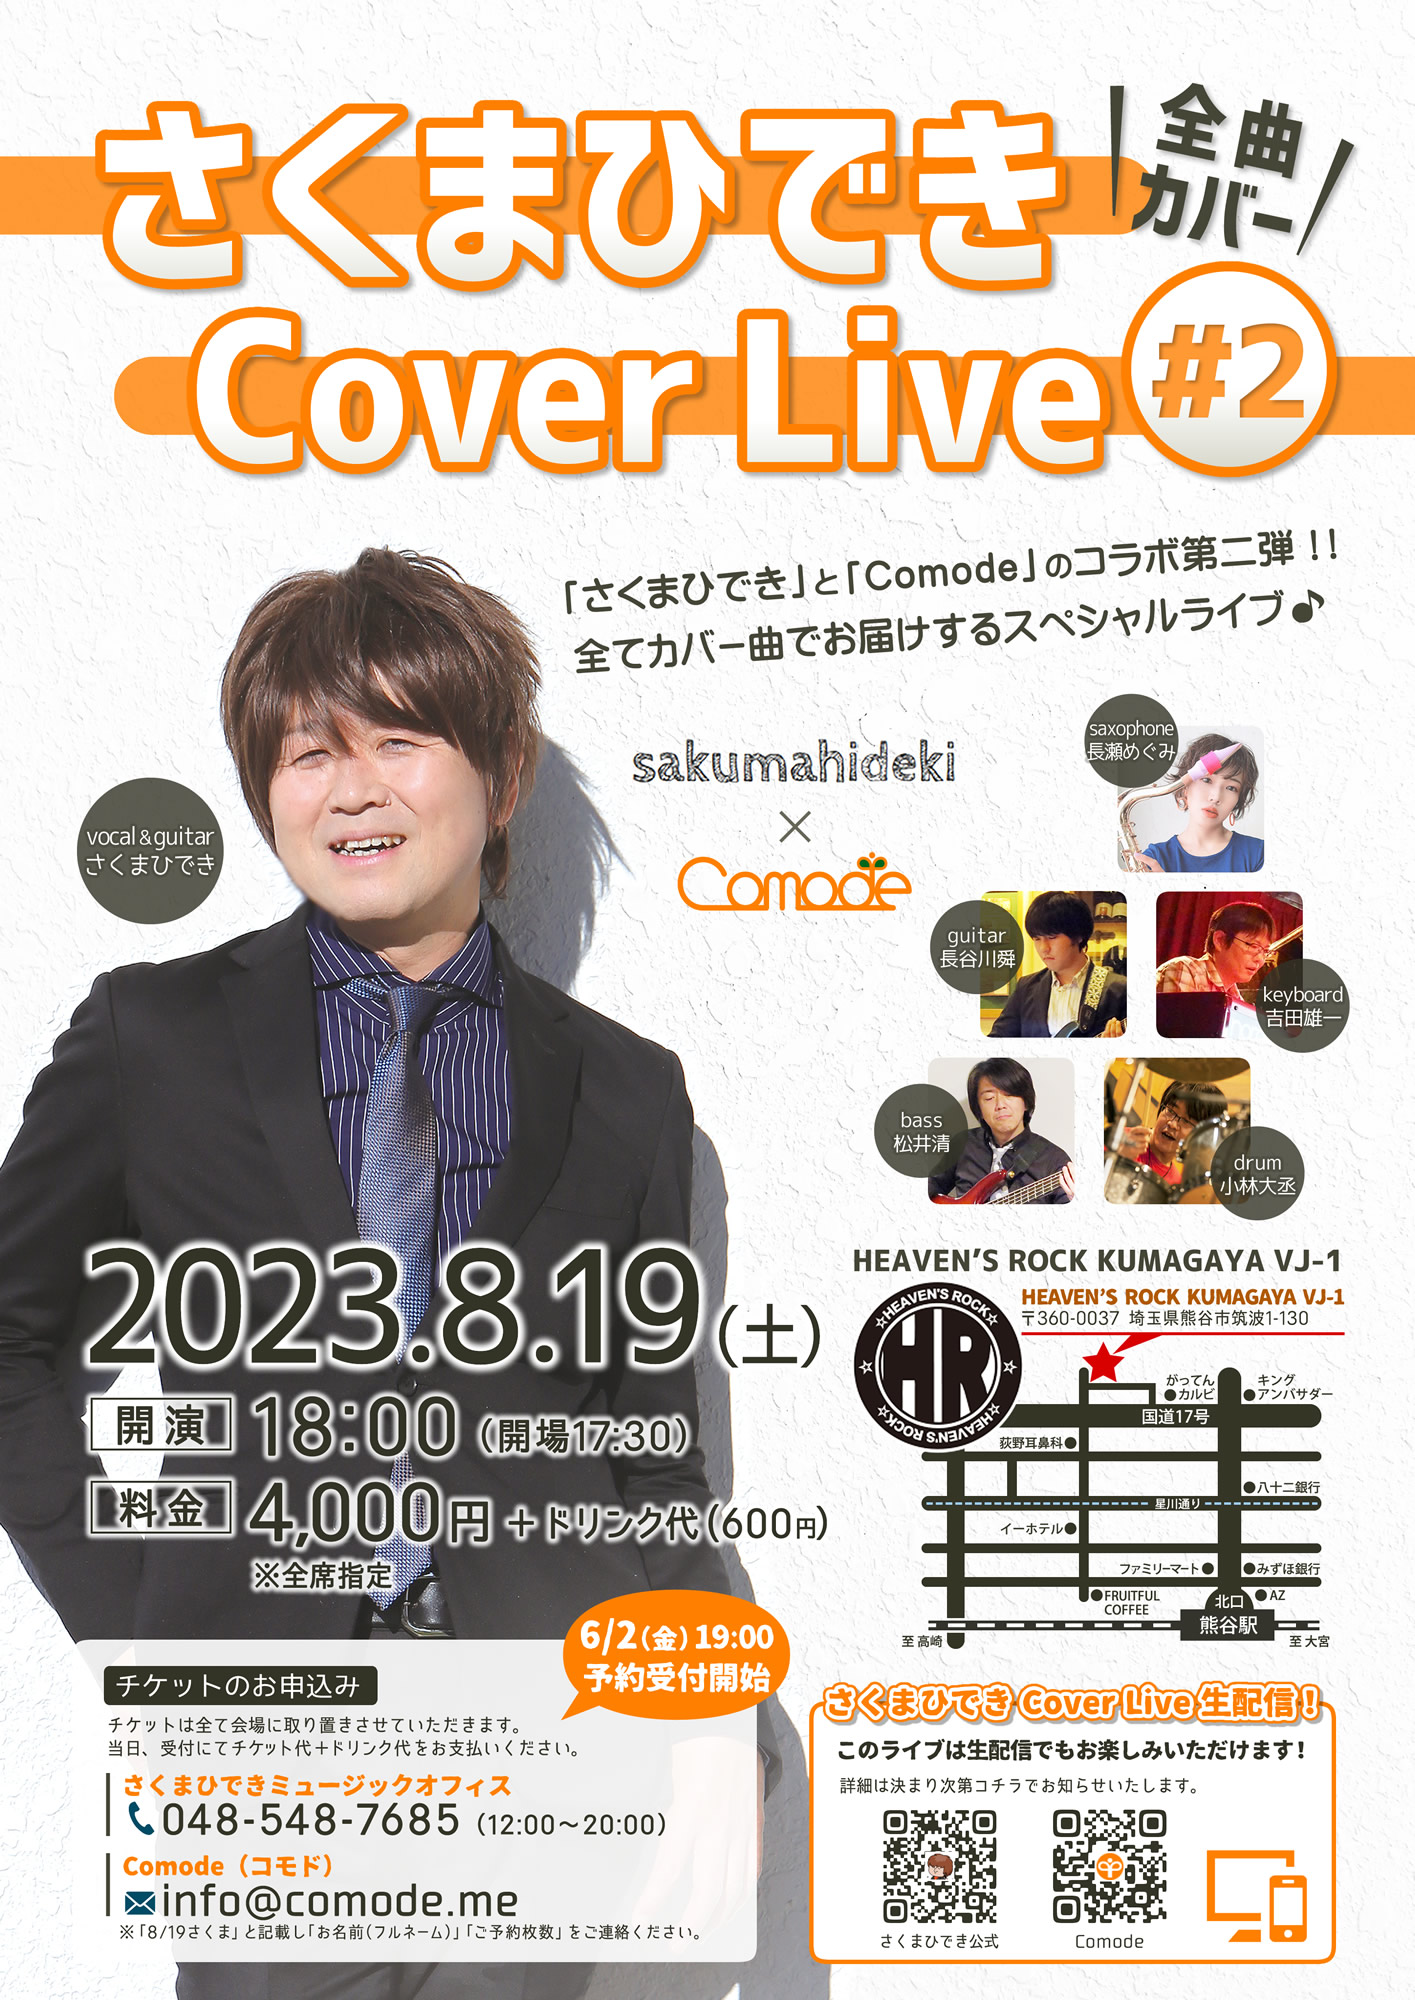 さくまひでき Cover Live #2 at HEAVEN'S ROCK熊谷VJ-1” height=